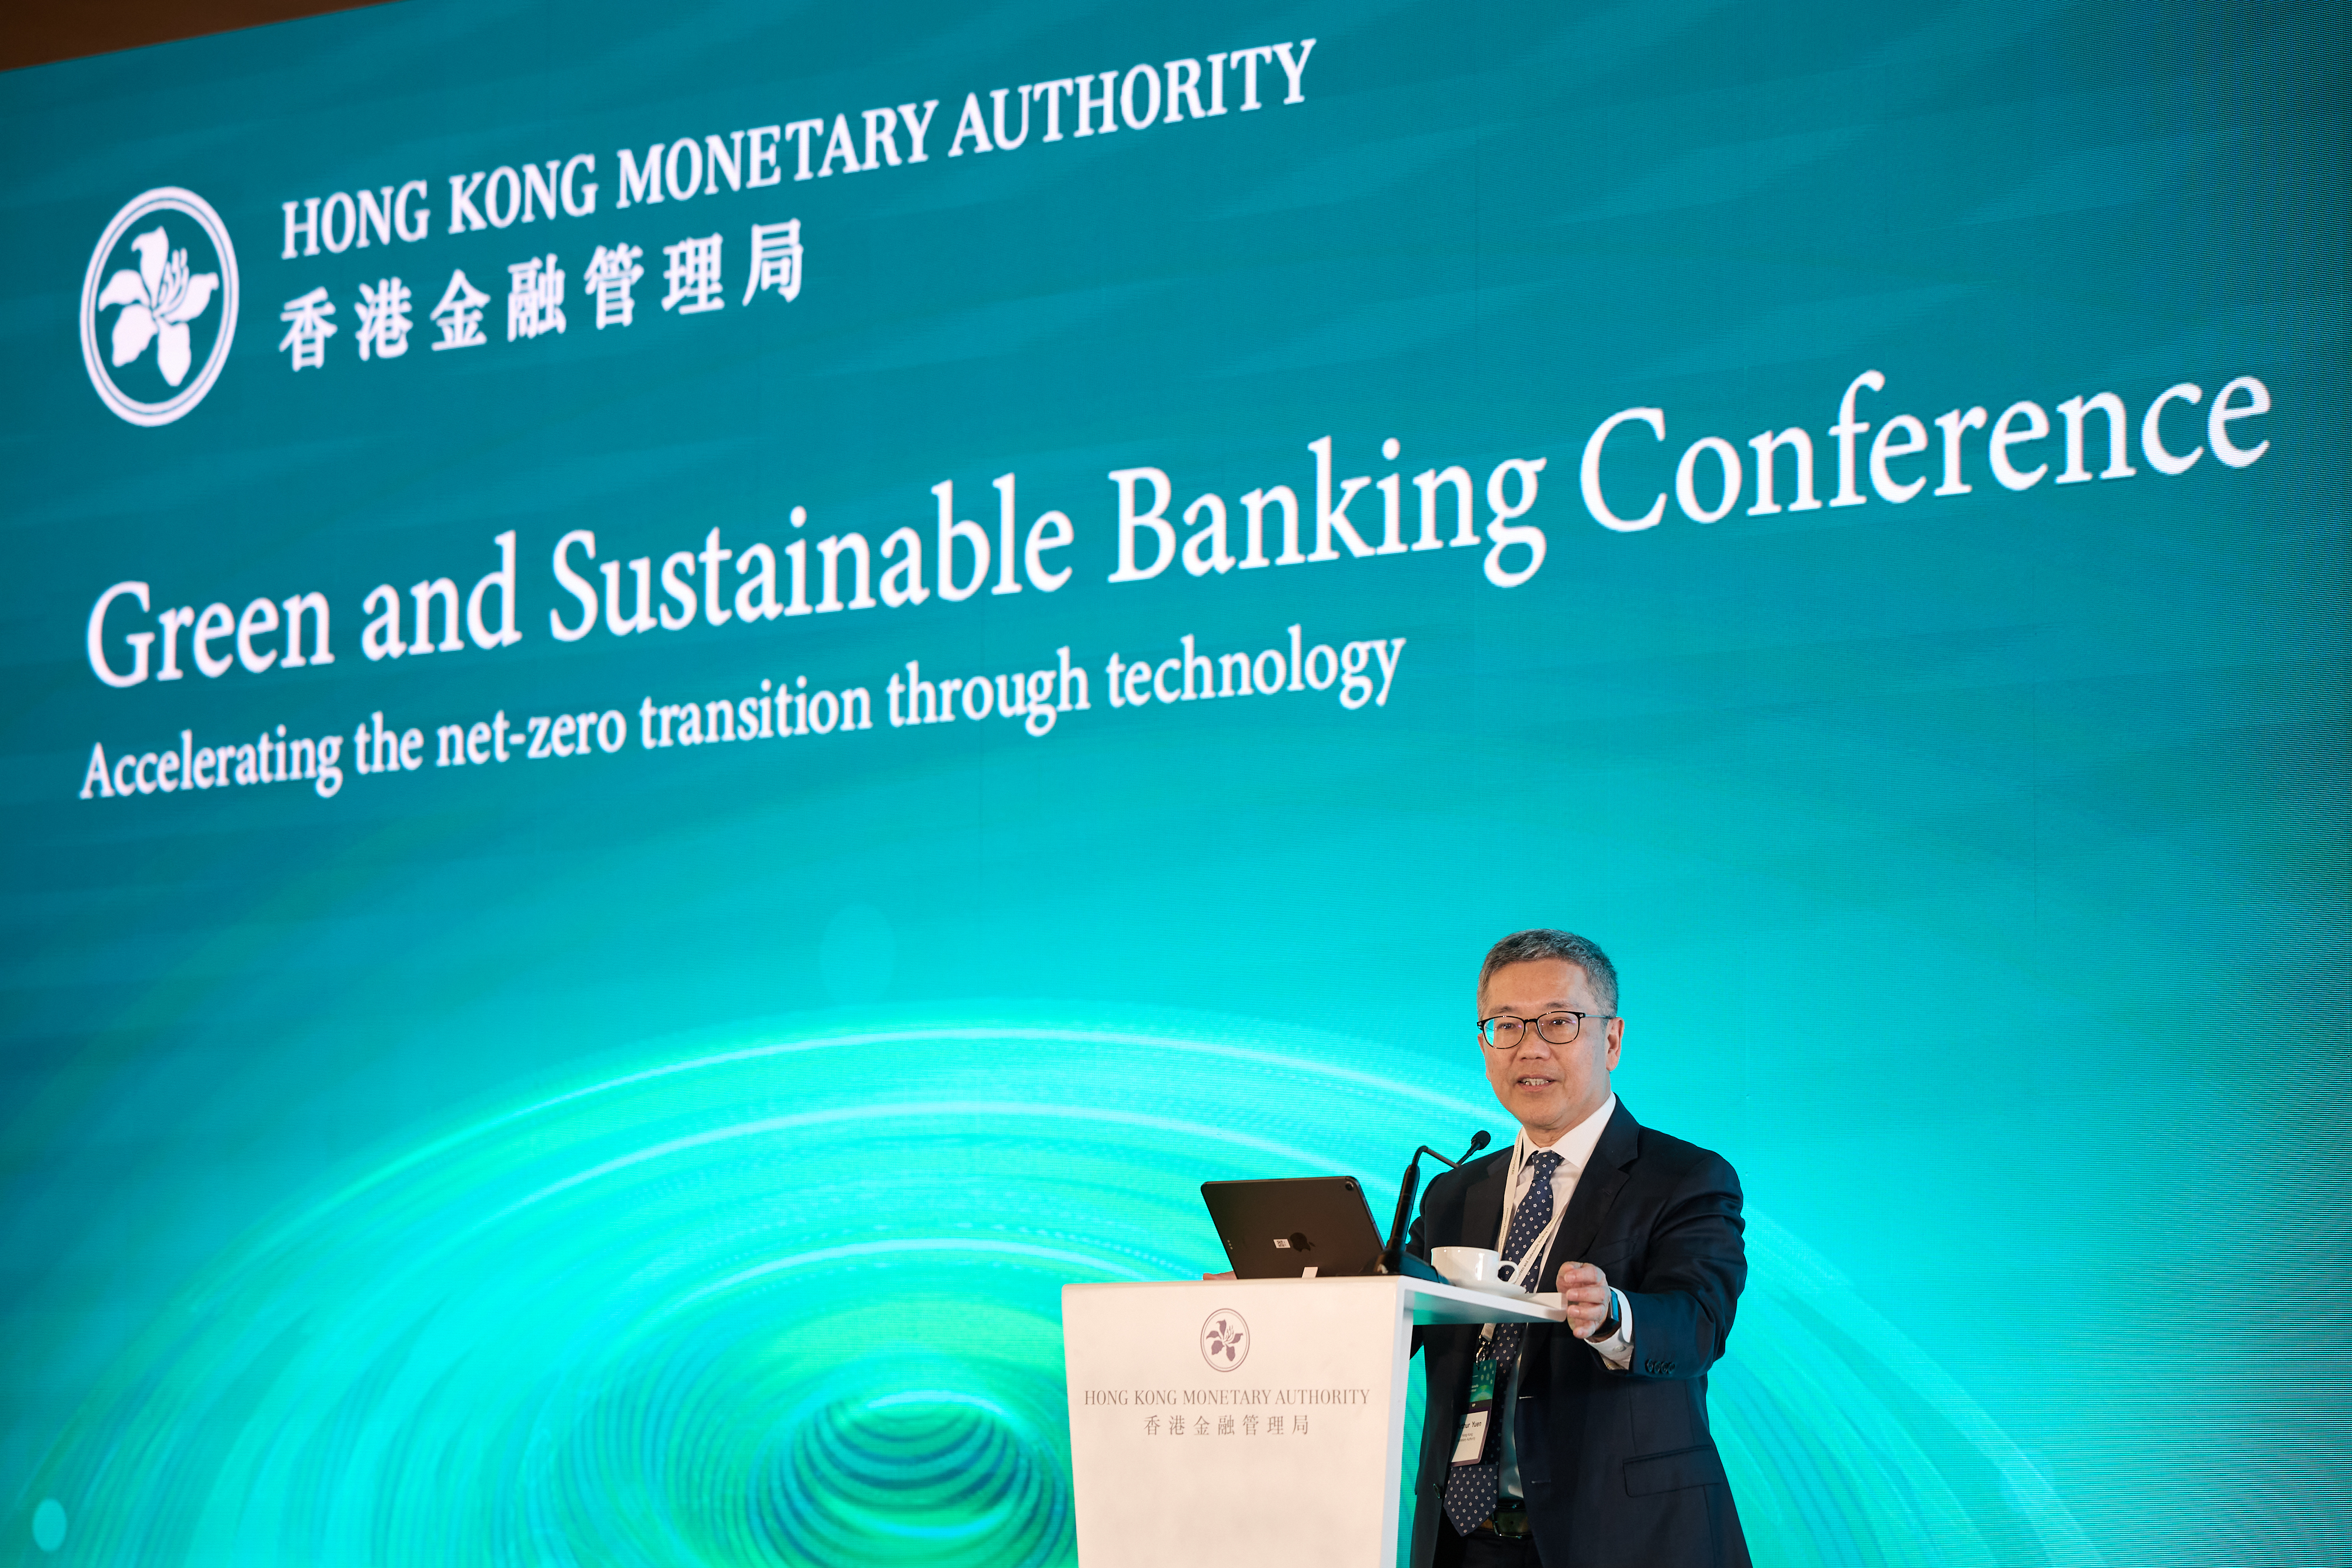 金管局副總裁阮國恒於「綠色及可持續銀行研討會」致開幕辭。